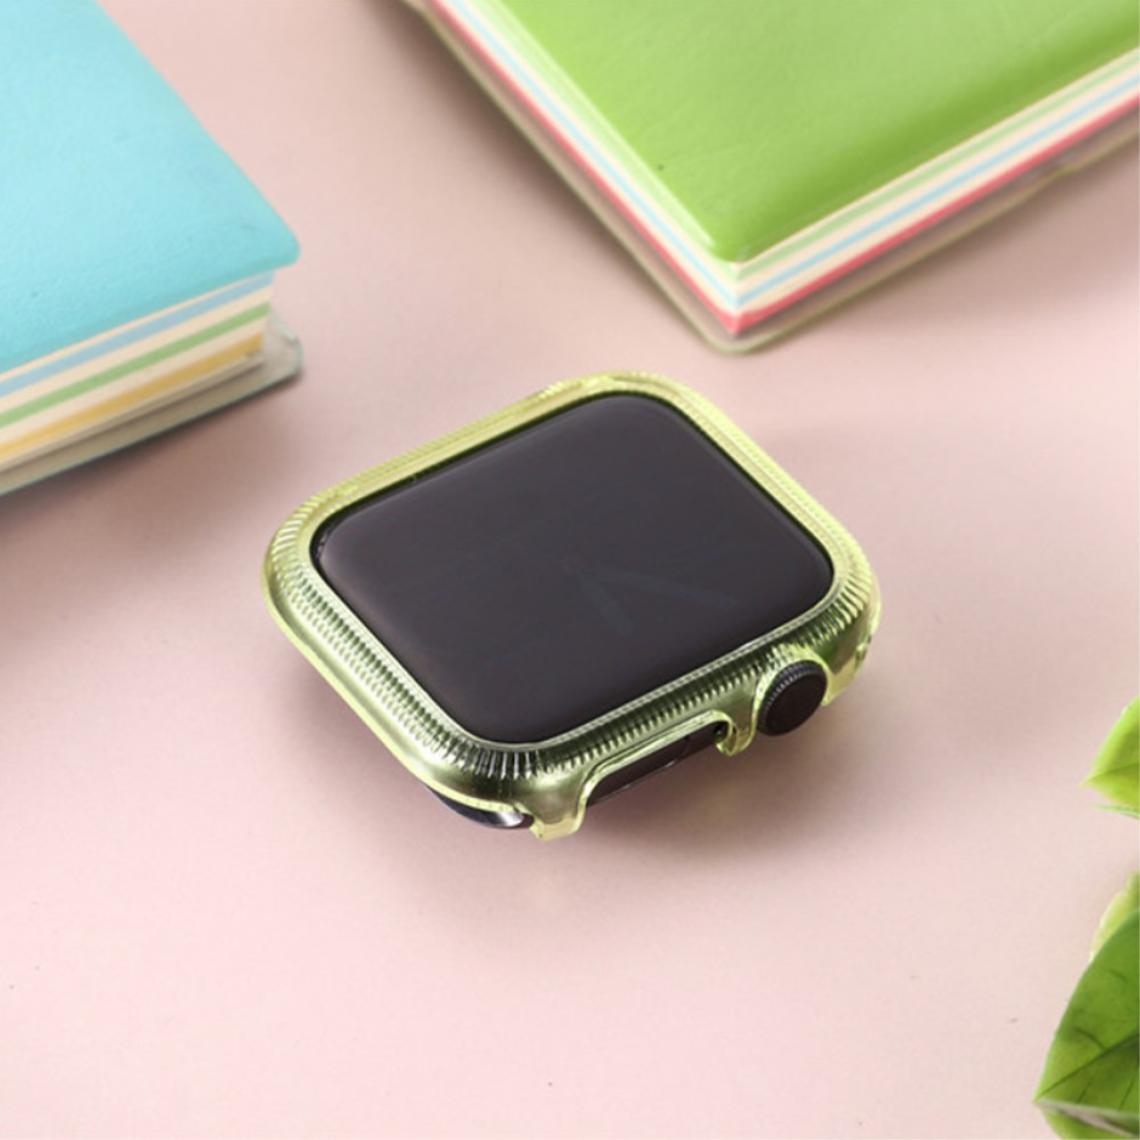 Other - Coque en TPU cadre coloré vert pour votre Apple Watch Series 6/SE/5/4 40mm - Accessoires bracelet connecté